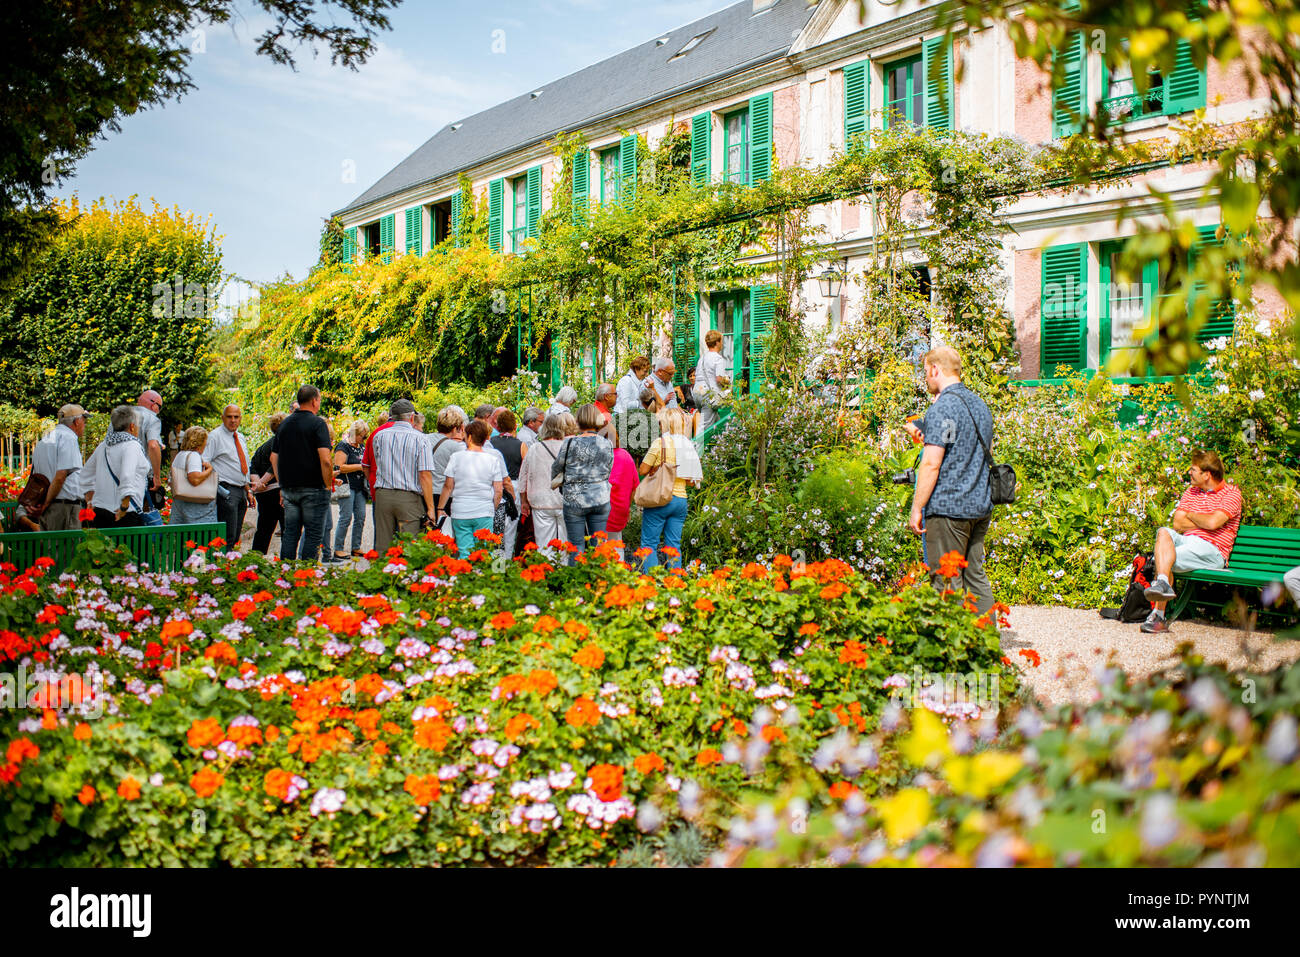 GIVERNY, Francia - 03 Settembre 2017: la casa e il giardino di Claud Monet con turisti, francese famoso pittore impressionista in Giverny città in Francia Foto Stock